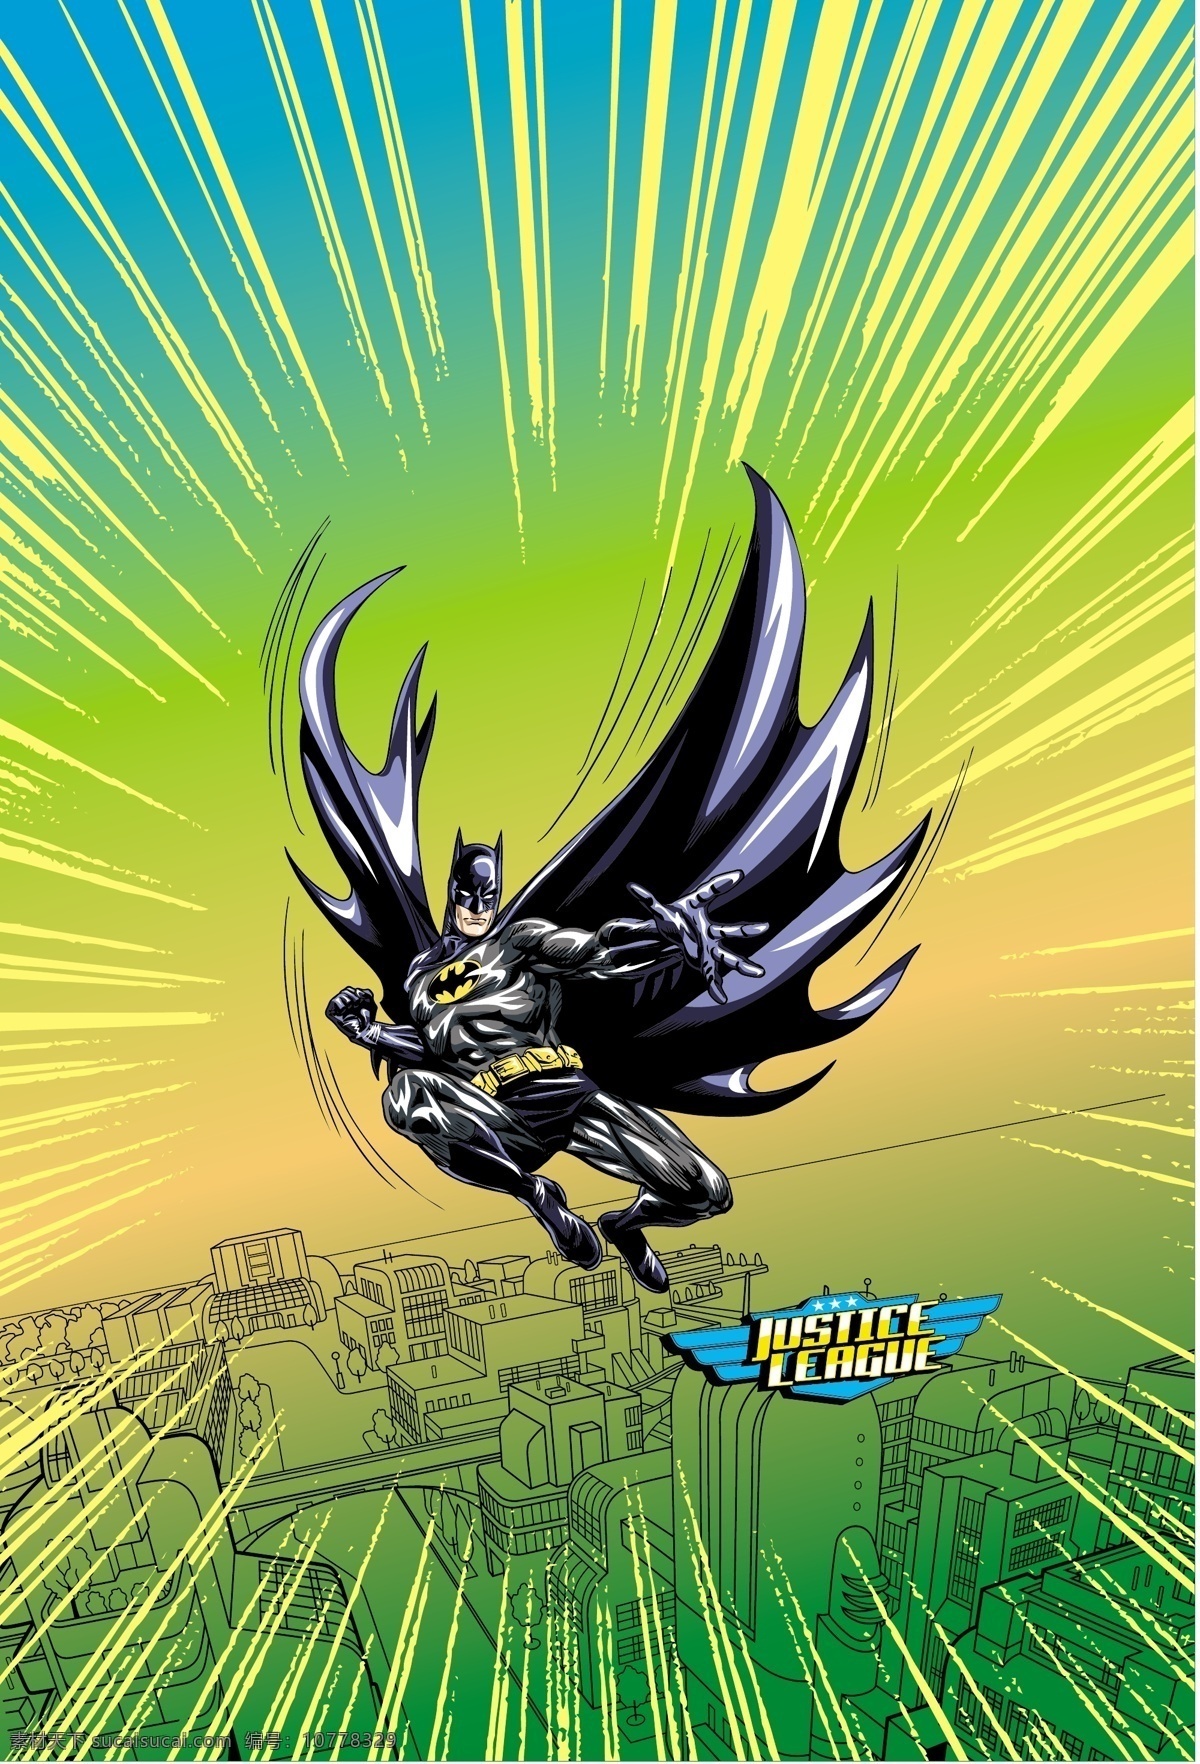 蝙蝠侠 超人 superman batman 闪电侠 flash 华纳 dc漫画 超级英雄 英雄联盟 卡通形象 其他人物 矢量人物 矢量 超人英雄